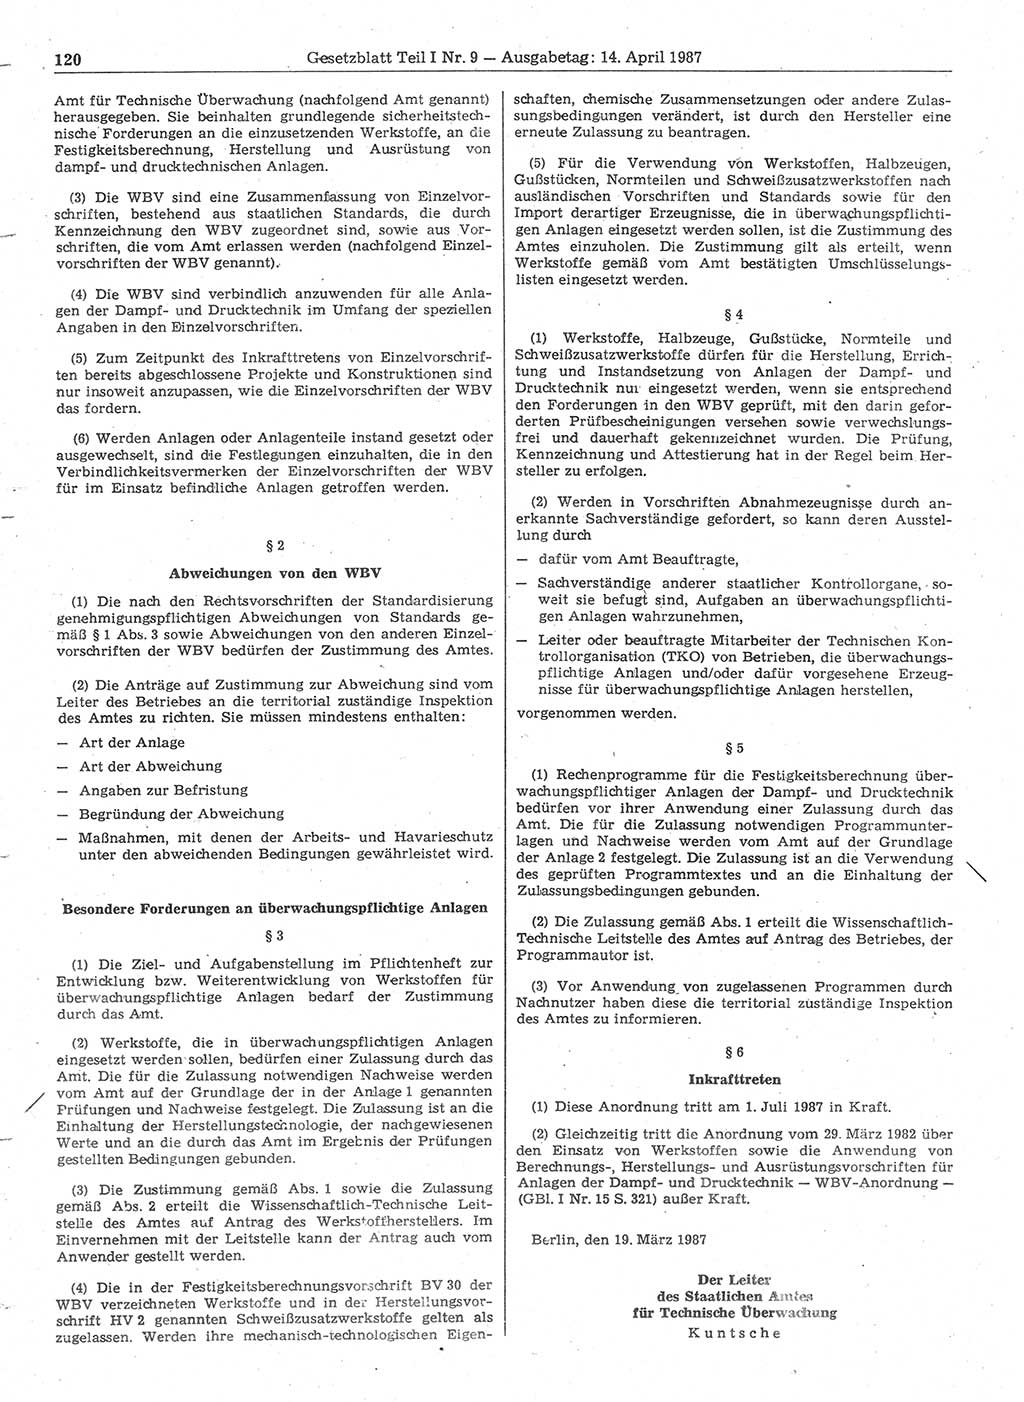 Gesetzblatt (GBl.) der Deutschen Demokratischen Republik (DDR) Teil Ⅰ 1987, Seite 120 (GBl. DDR Ⅰ 1987, S. 120)